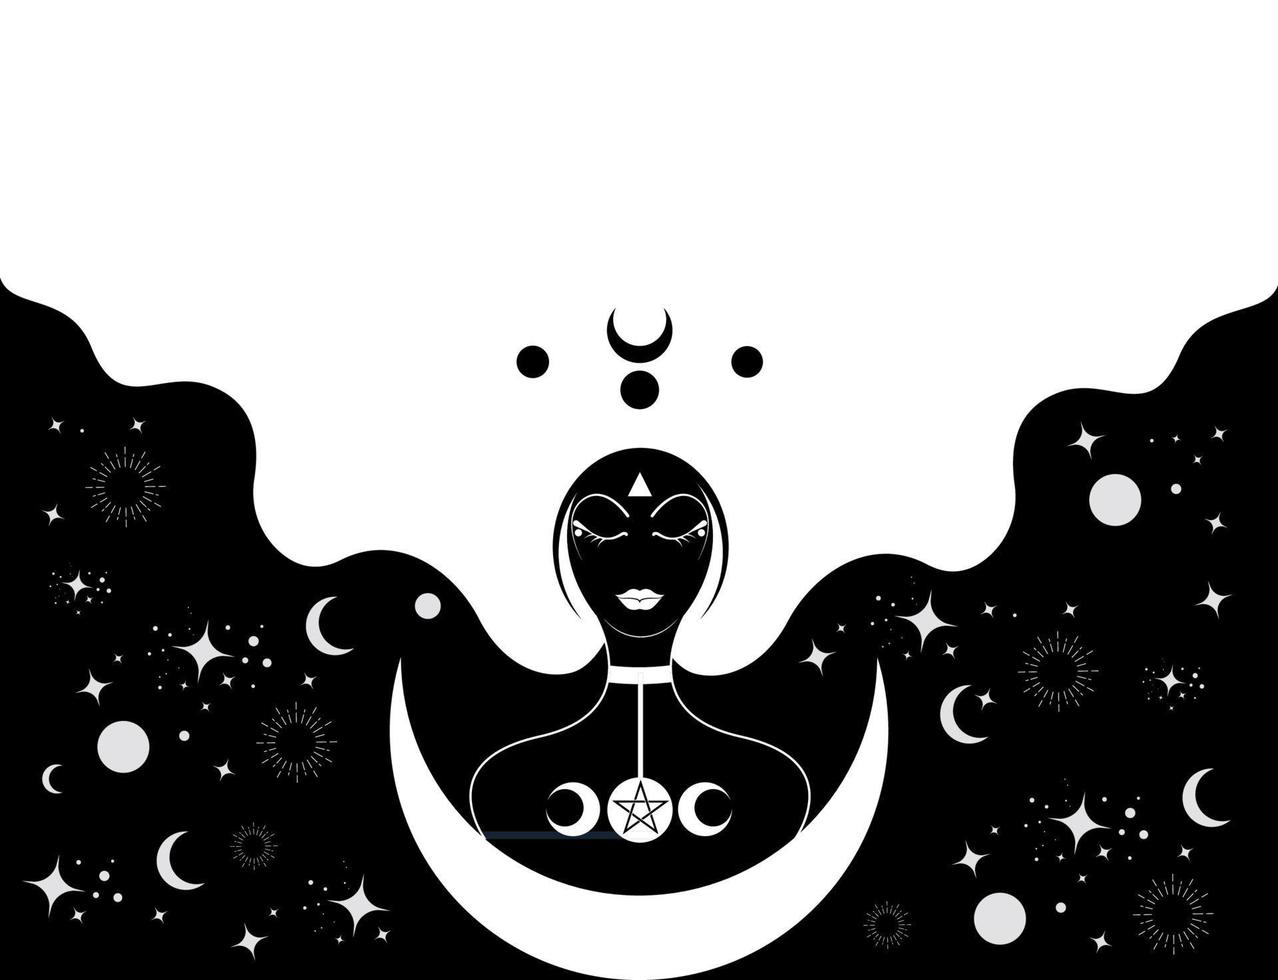 prêtresse aux cheveux longs, modèle. croissant de lune, icône sacrée de la déesse de la femme noire wiccan. signe wicca religieux triple lune. symboles de néopaganisme sur fond céleste blanc vecteur